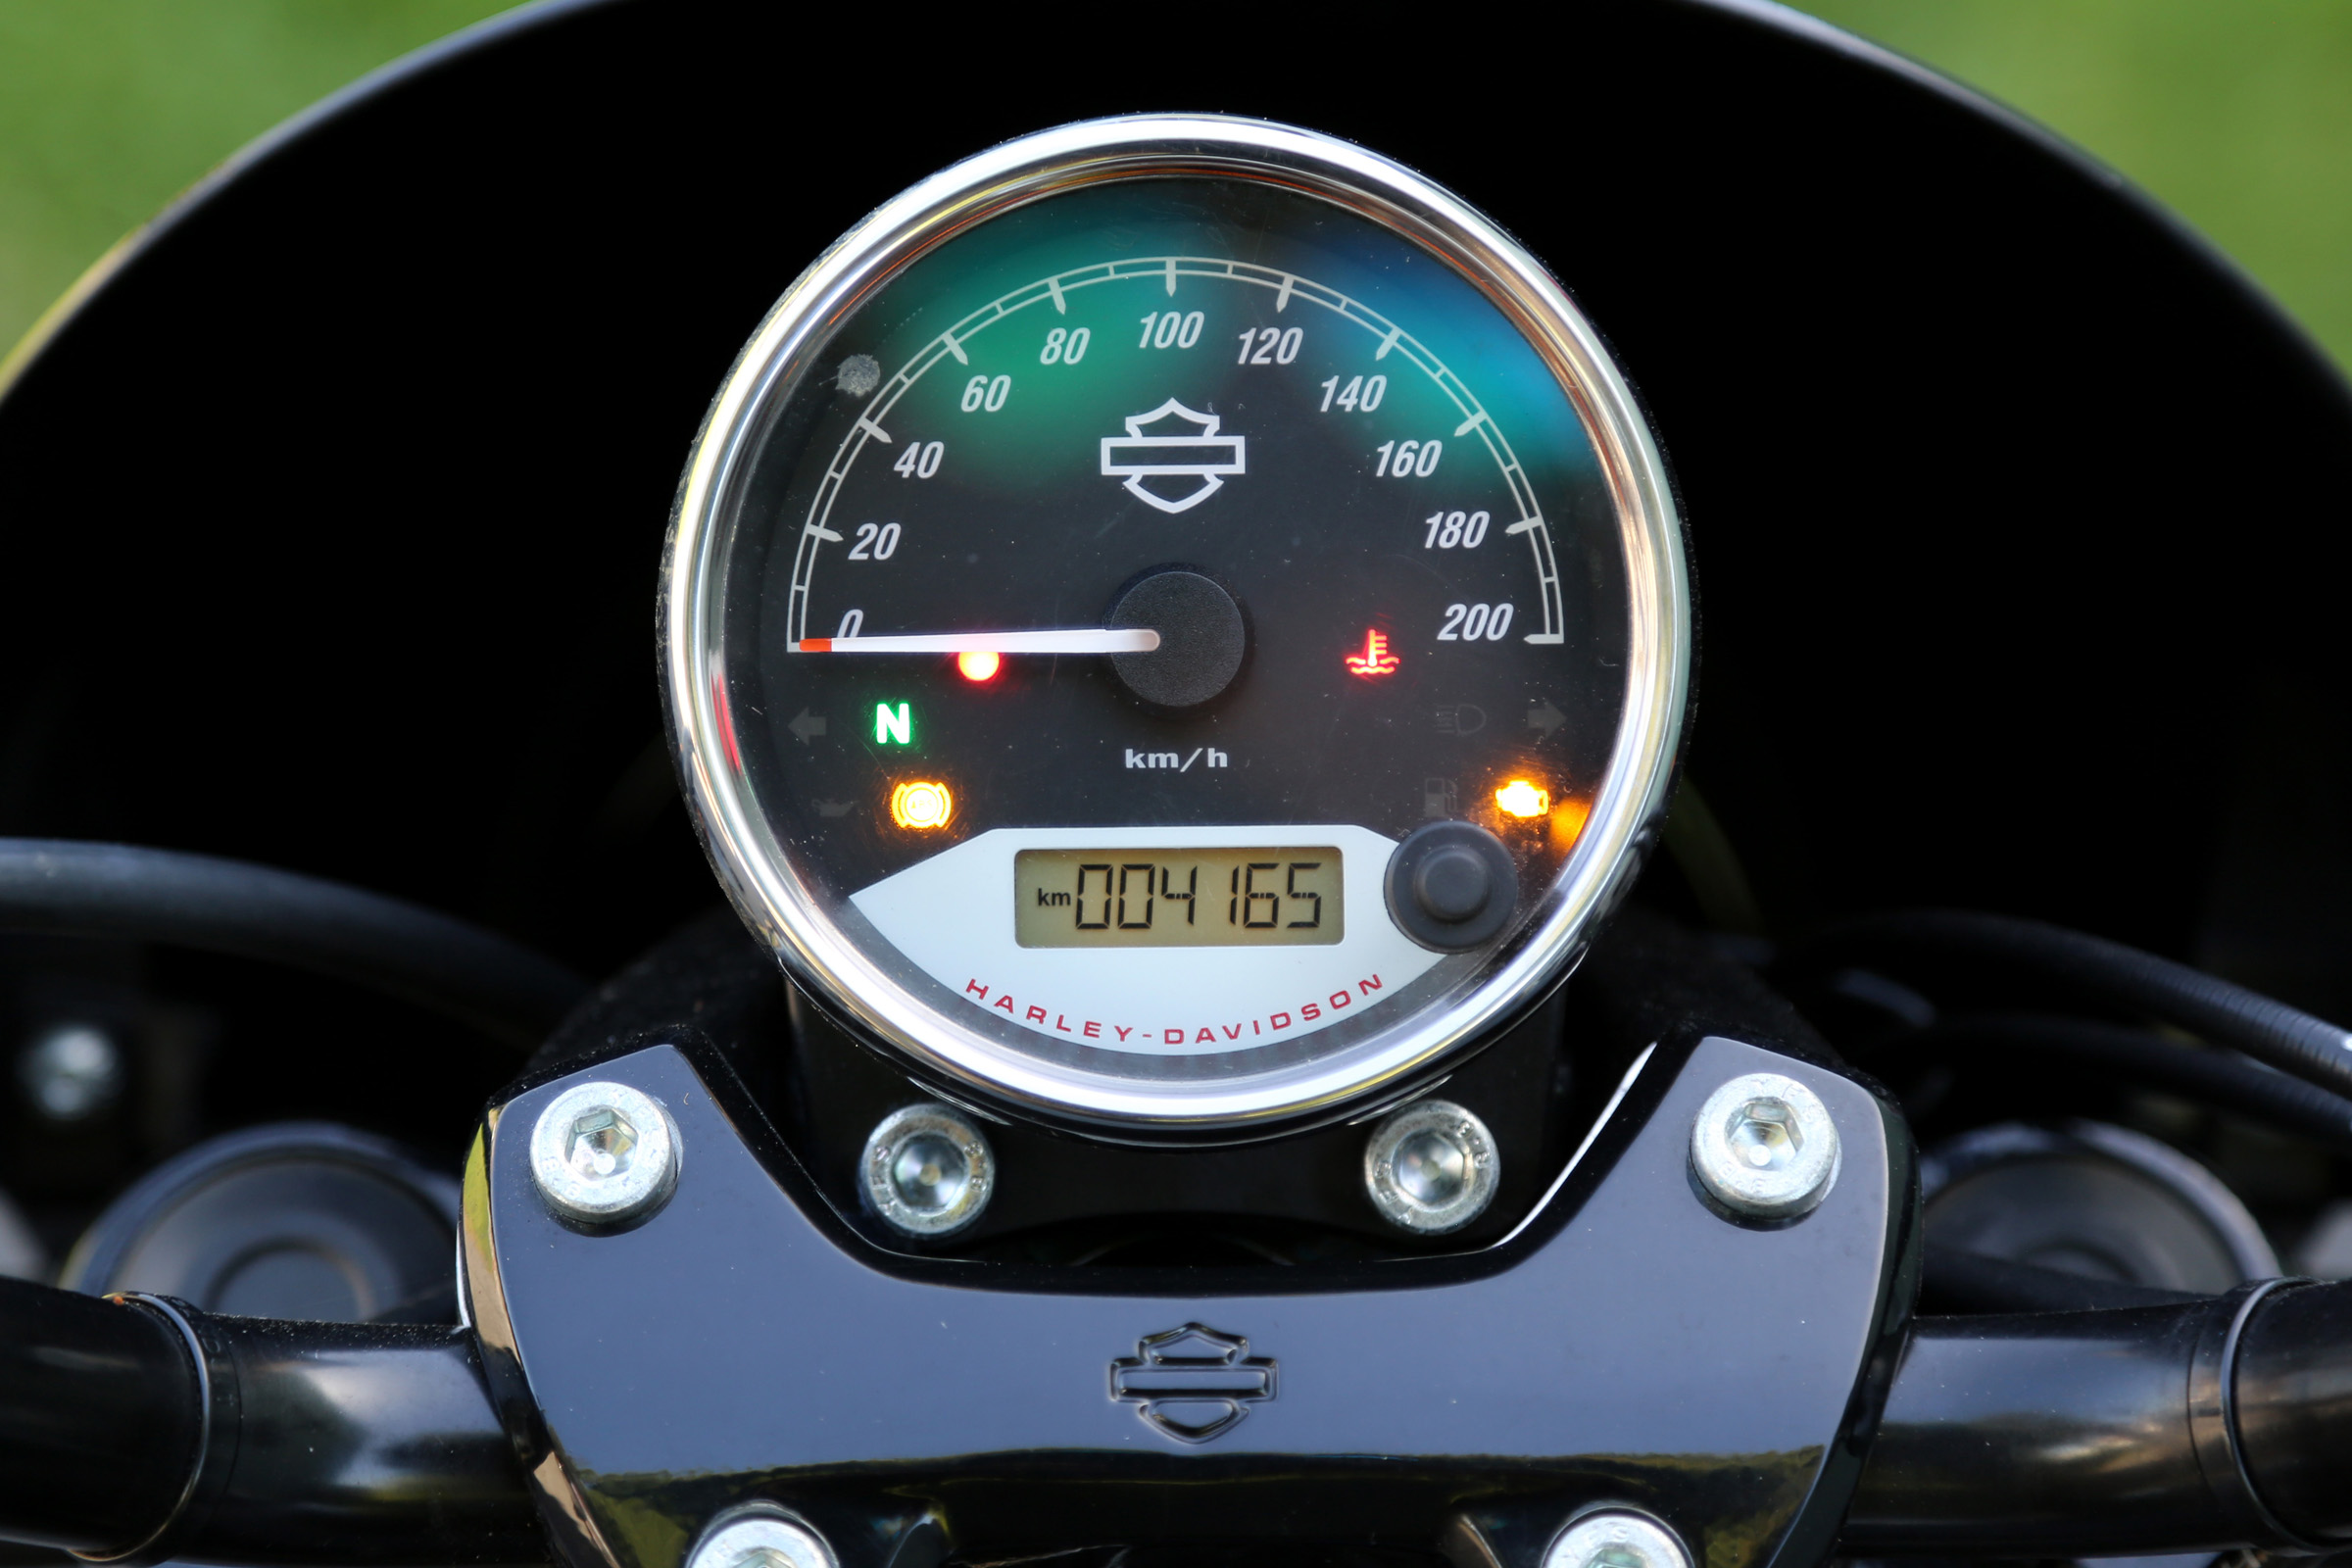 2019 Harley Davidson Street 500 XG500 dash